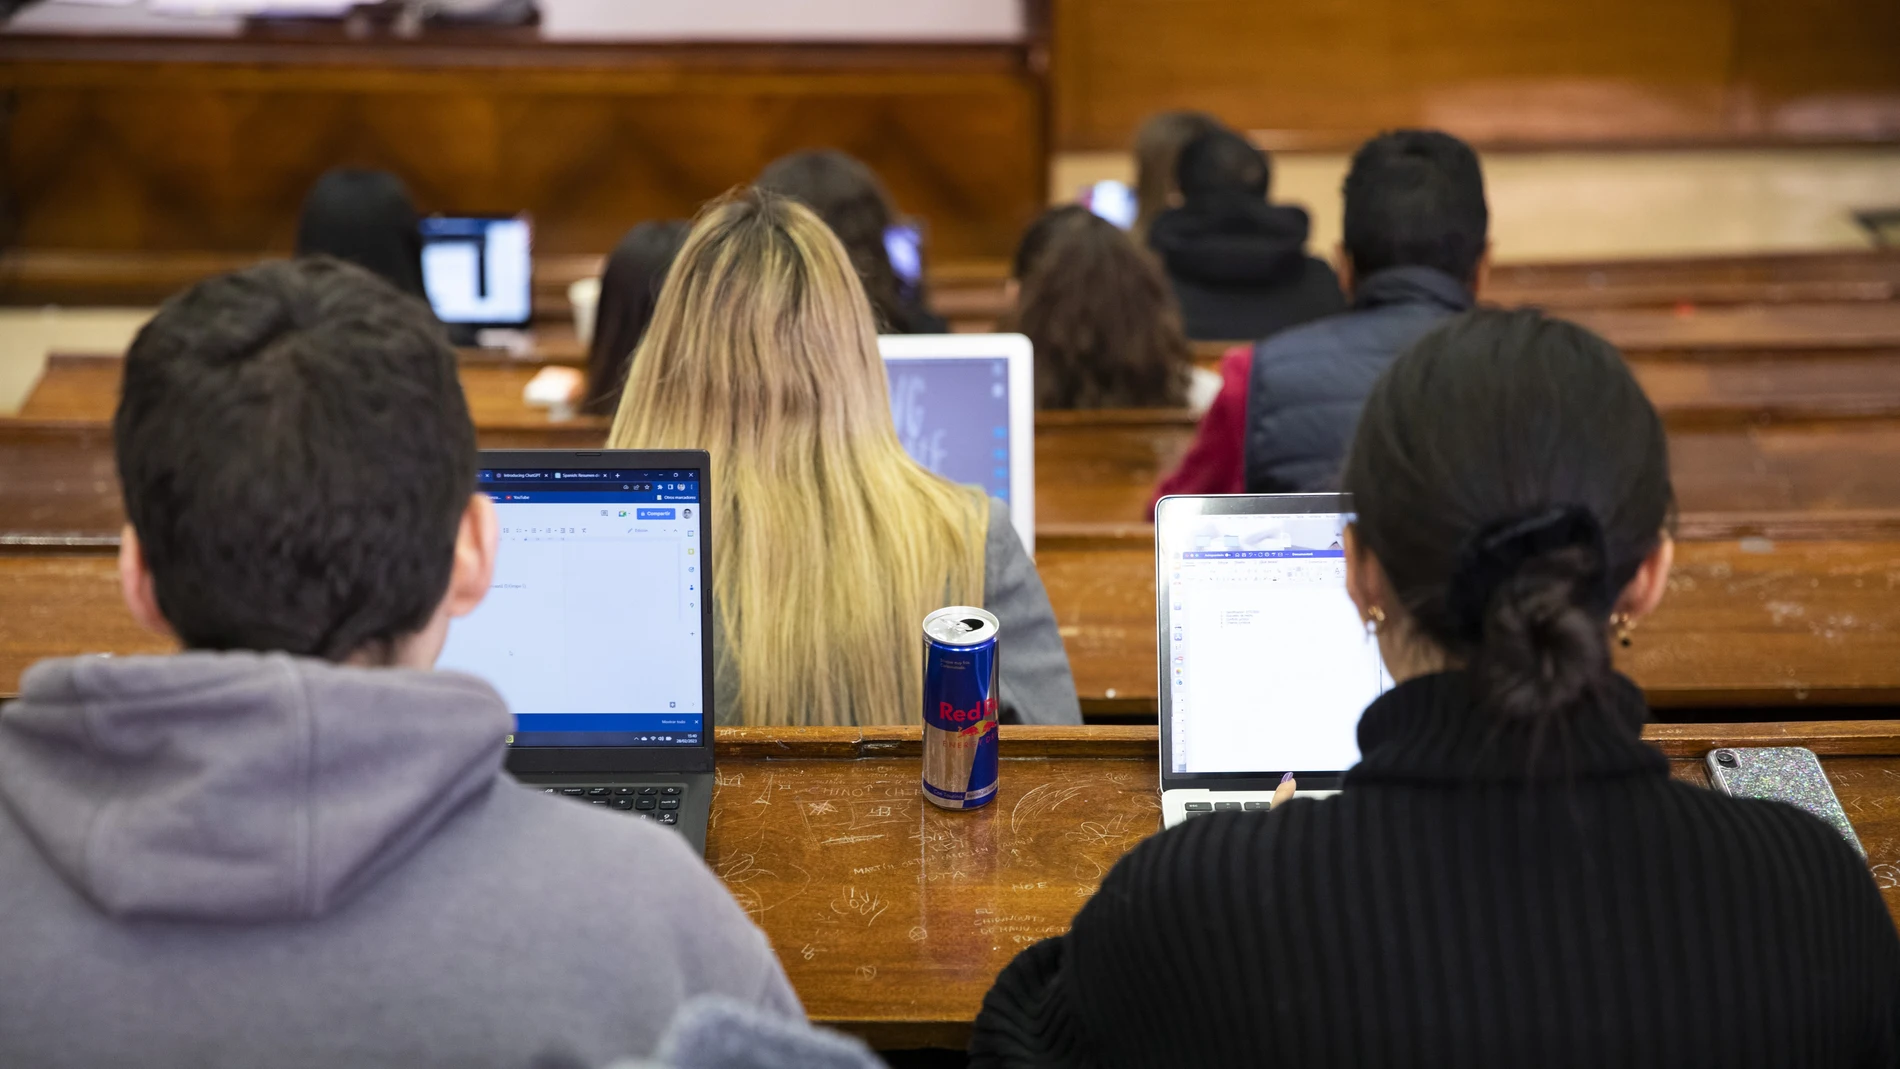 Universitarios durante una clase en la Facultad de Derecho de la Universidad Complutense de Madrid.